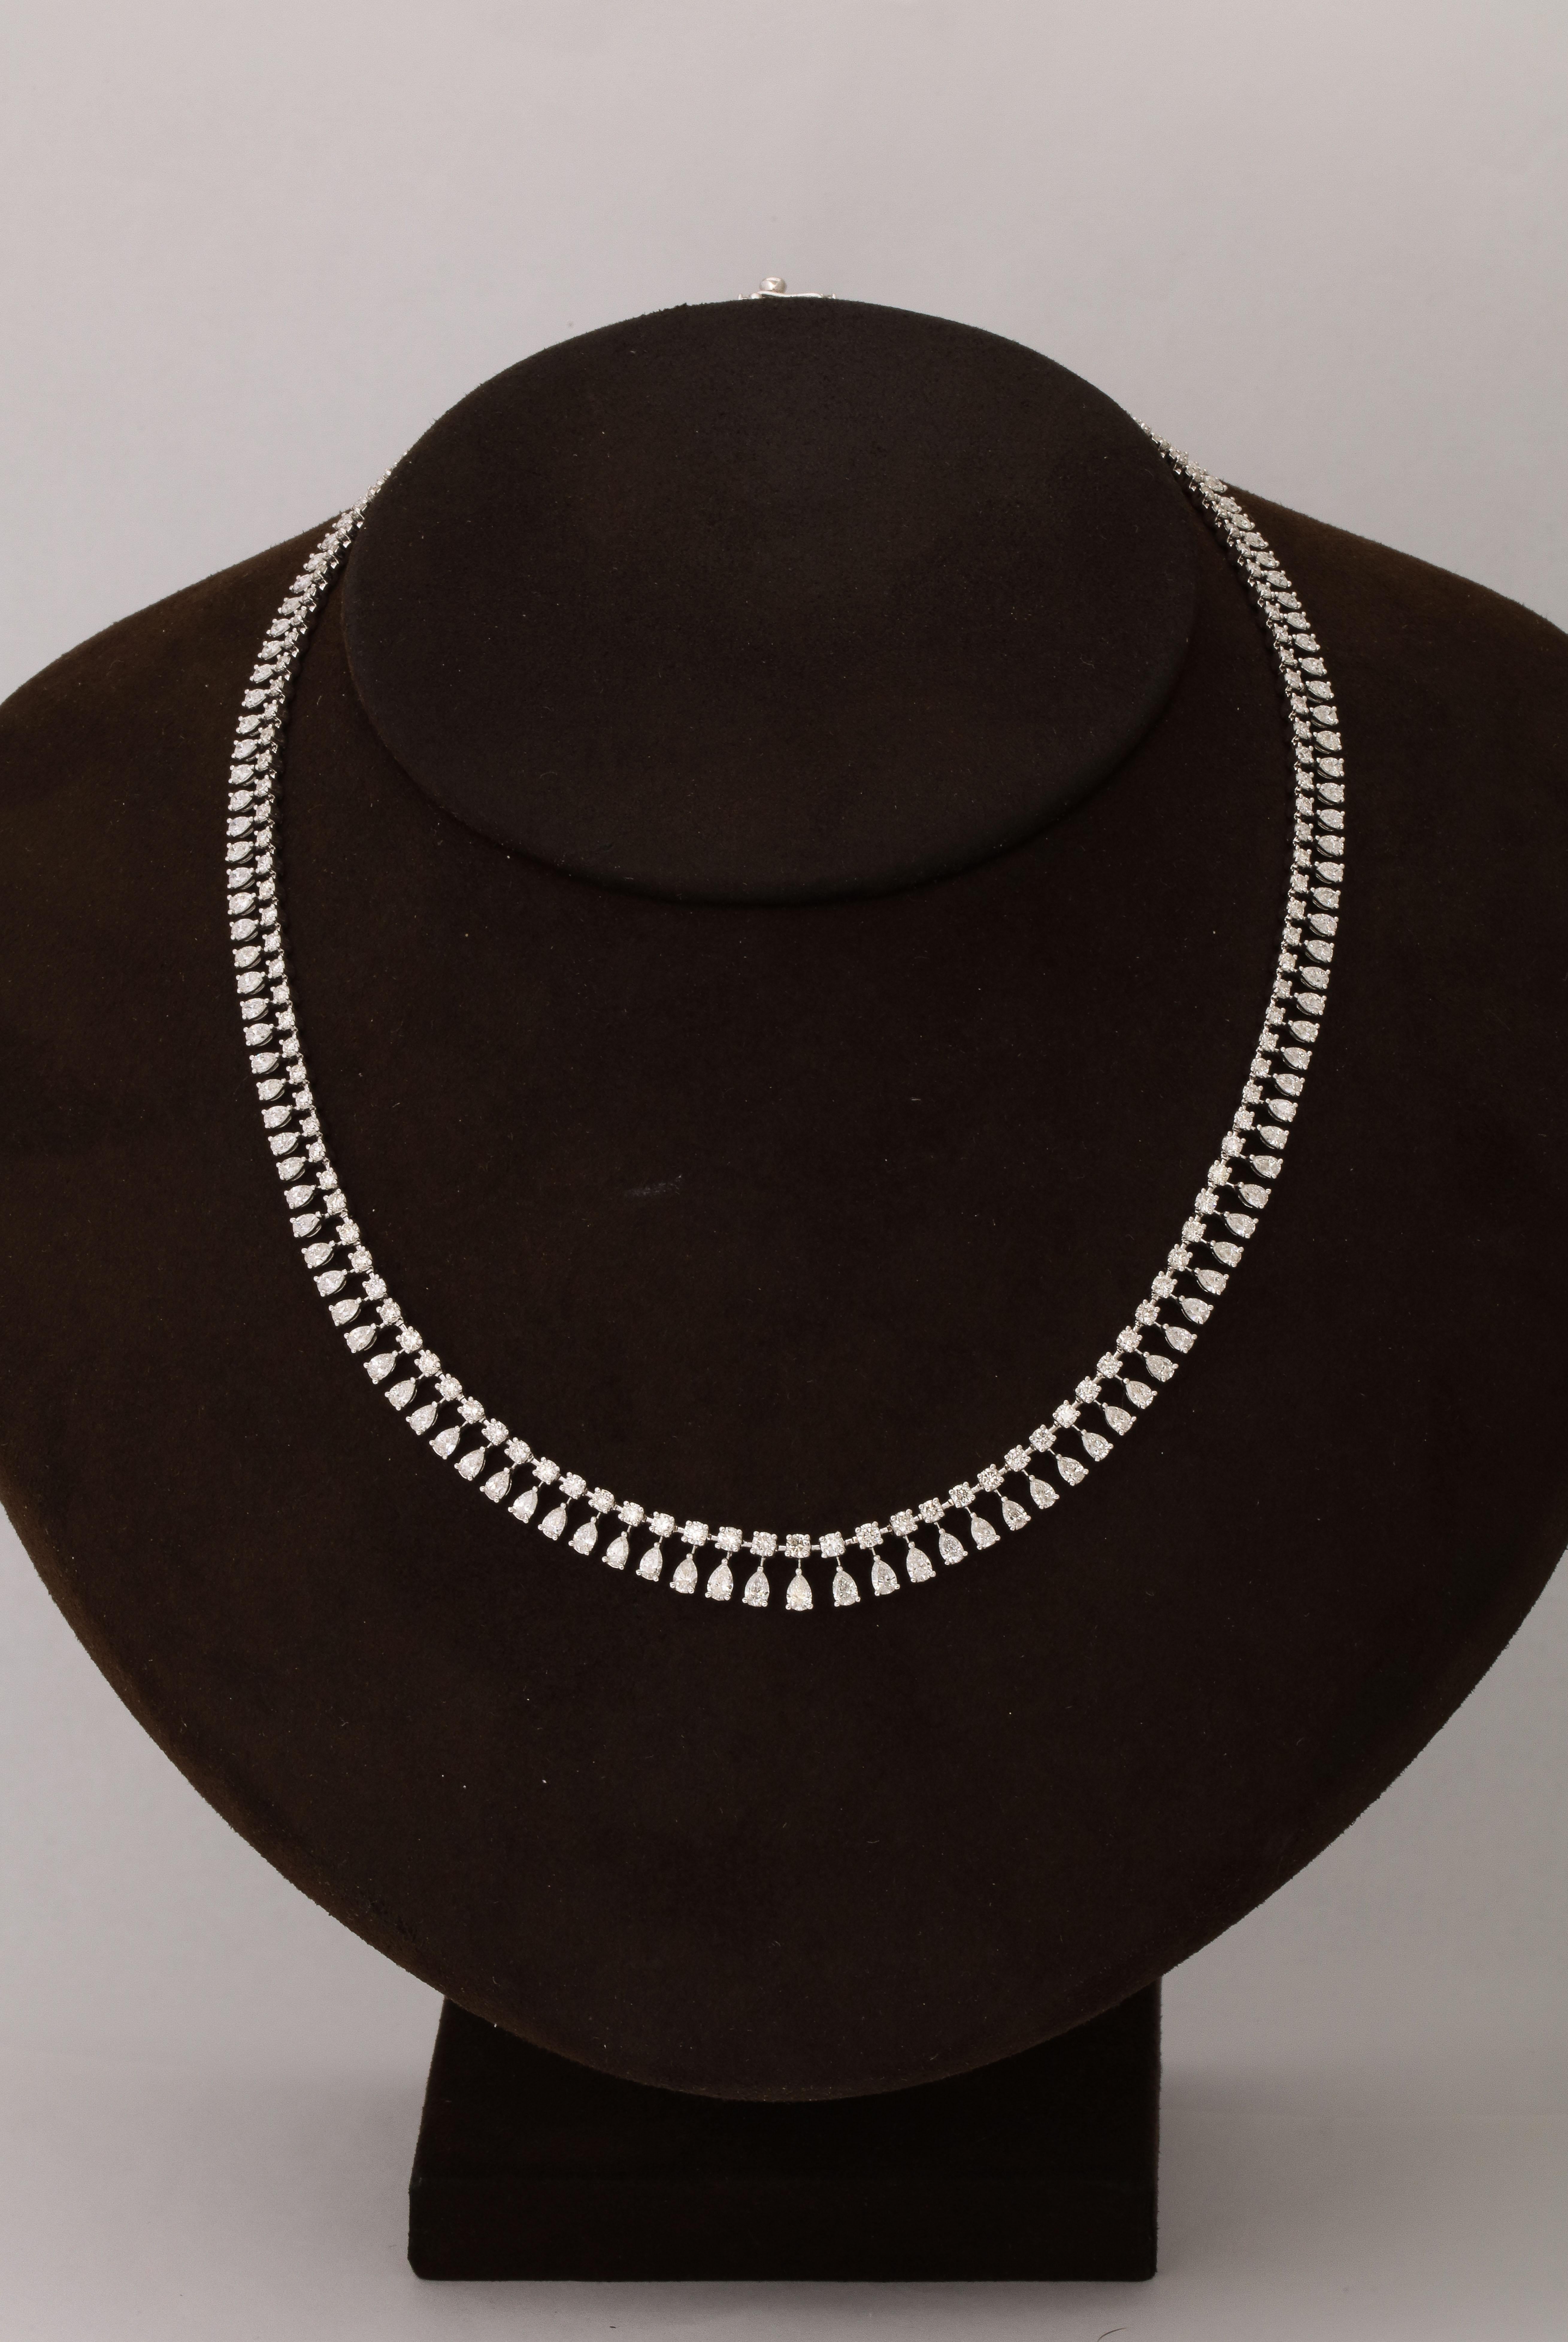 
Un fabuleux tour de cou superposé ou porté seul ! 

10,83 carats de diamants blancs de forme ronde et poire sertis dans de l'or blanc 18k.

Longueur de 15,5 pouces. 
 
